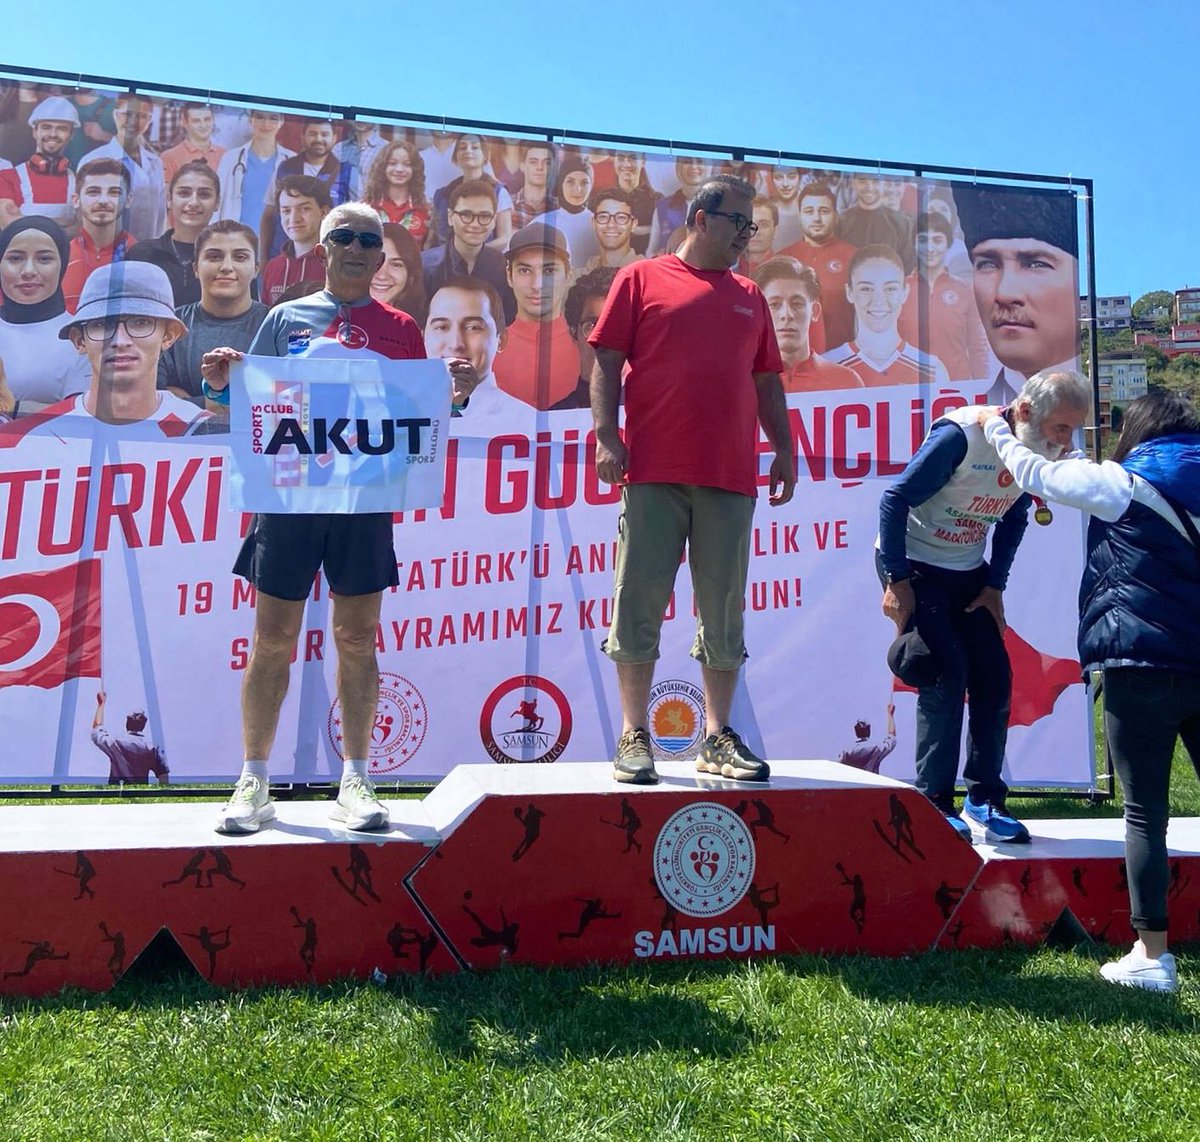 AKUT Spor Kulübü Atletizm Branşı sporcuları, 19 Mayıs Atatürk'ü Anma Gençlik ve Spor Bayramı Haftası Türkiye'nin Bir çok yerinde koşarak ve yarışlara katılarak kutladılar. 19 Mayıs Atatürk'ü Anma Gençlik ve Spor Bayramımız Kutlu olsun.